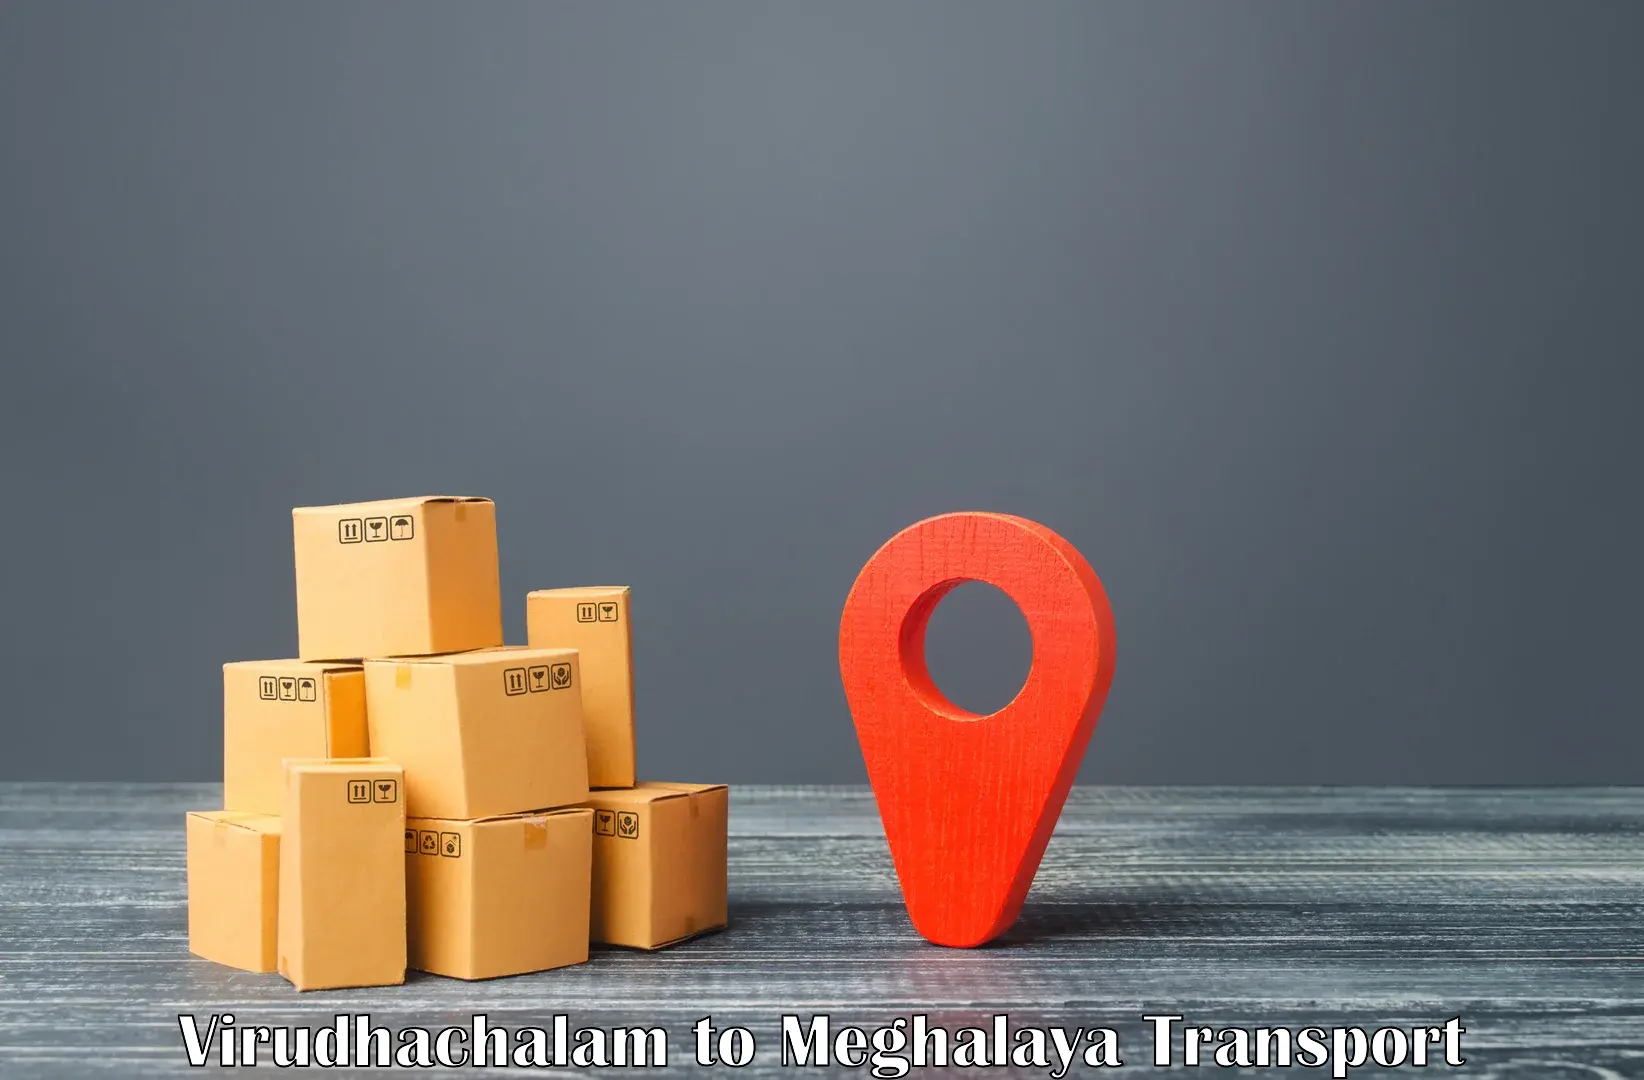 Online transport booking Virudhachalam to Cherrapunji